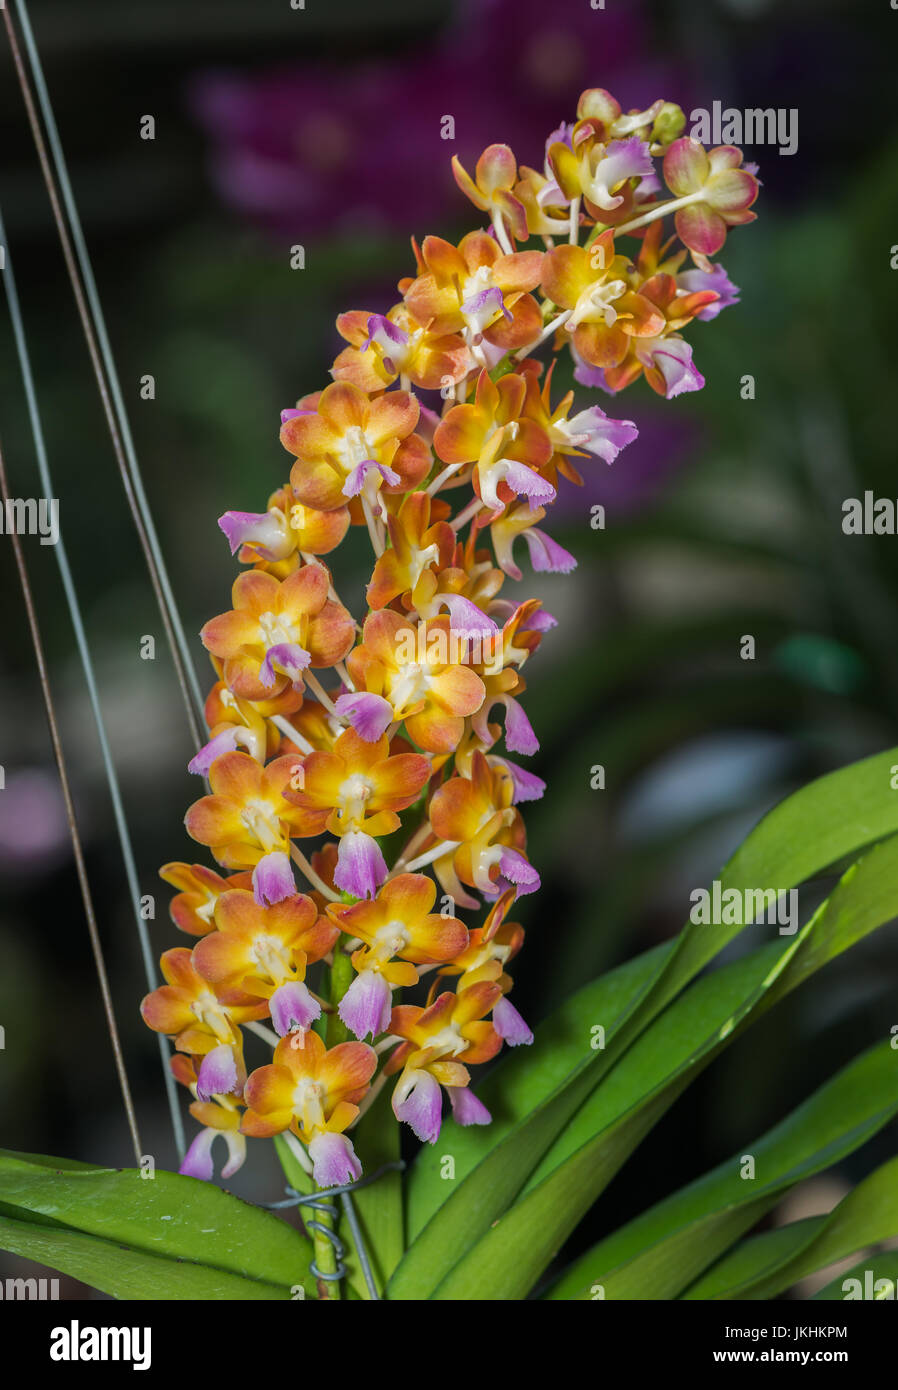 Hybrid orange Vanda orchid on nature background Stock Photo